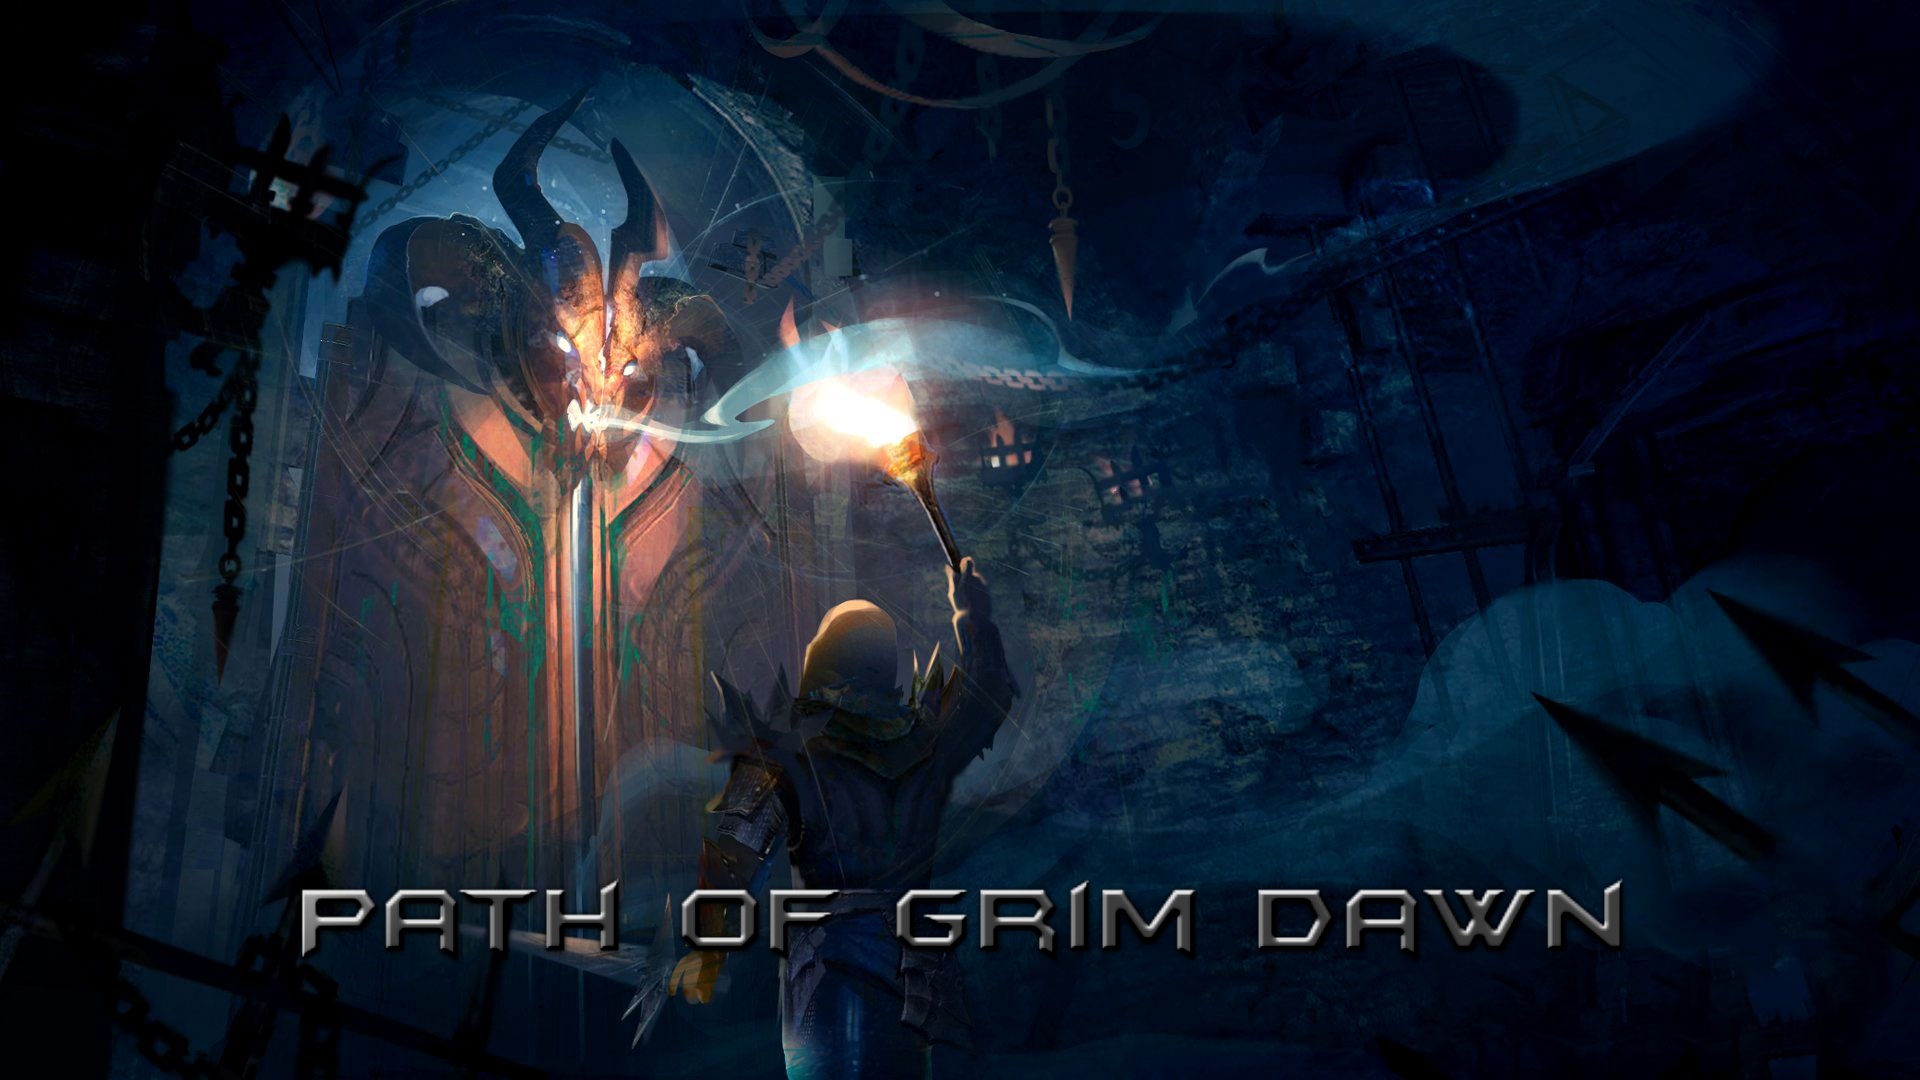 Như bao game khác, Path of Grim Dawn cũng cần các bản vá để giải quyết các lỗi và tăng tính ổn định cho game. Bạn muốn biết thêm về bản vá nóng v3.3c? Hãy xem ảnh liên quan và cập nhật ngay cho gameplay của mình.